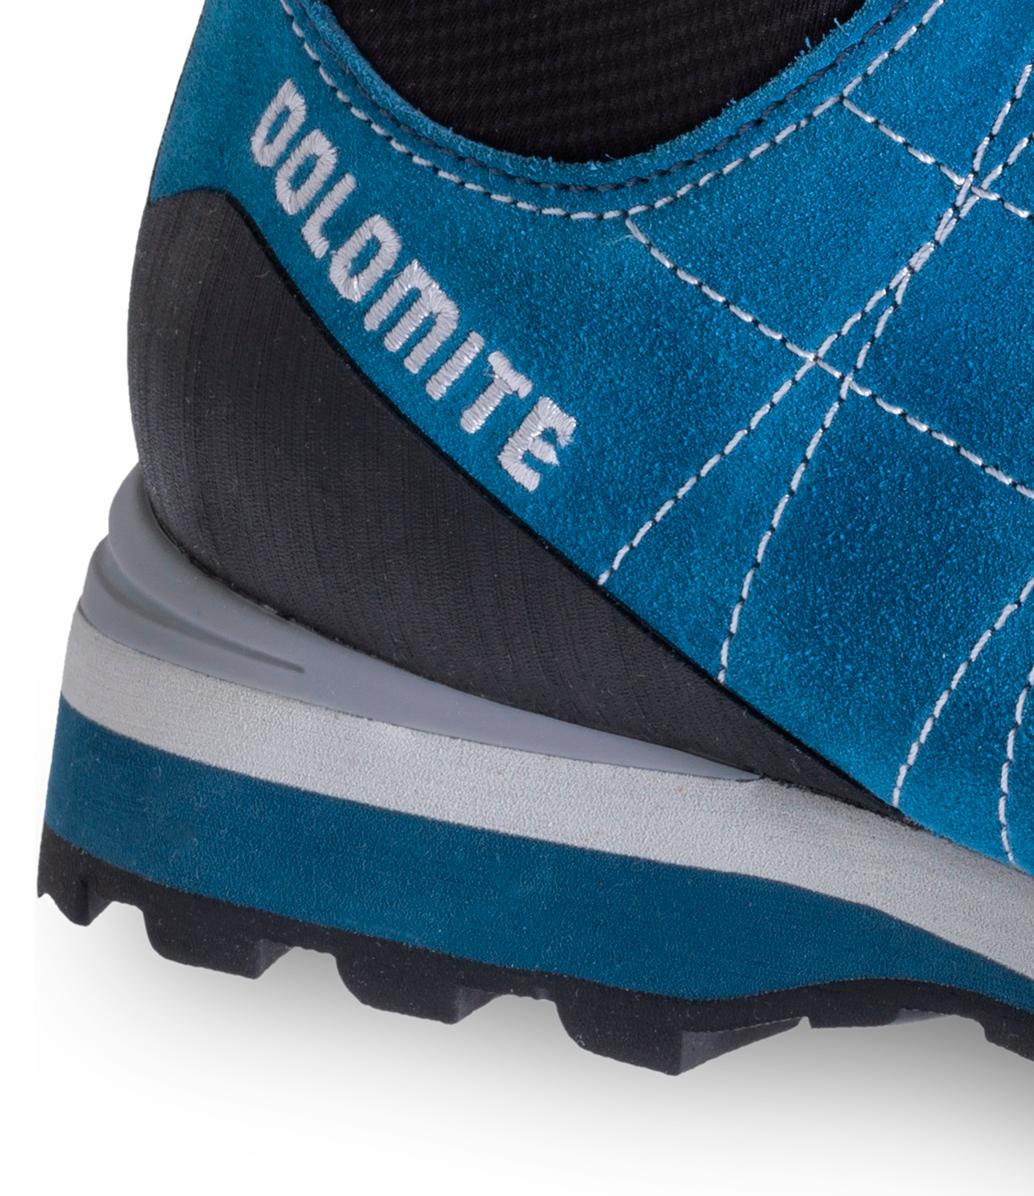 Ботинки Dolomite Diagonal GTX Lake Blue